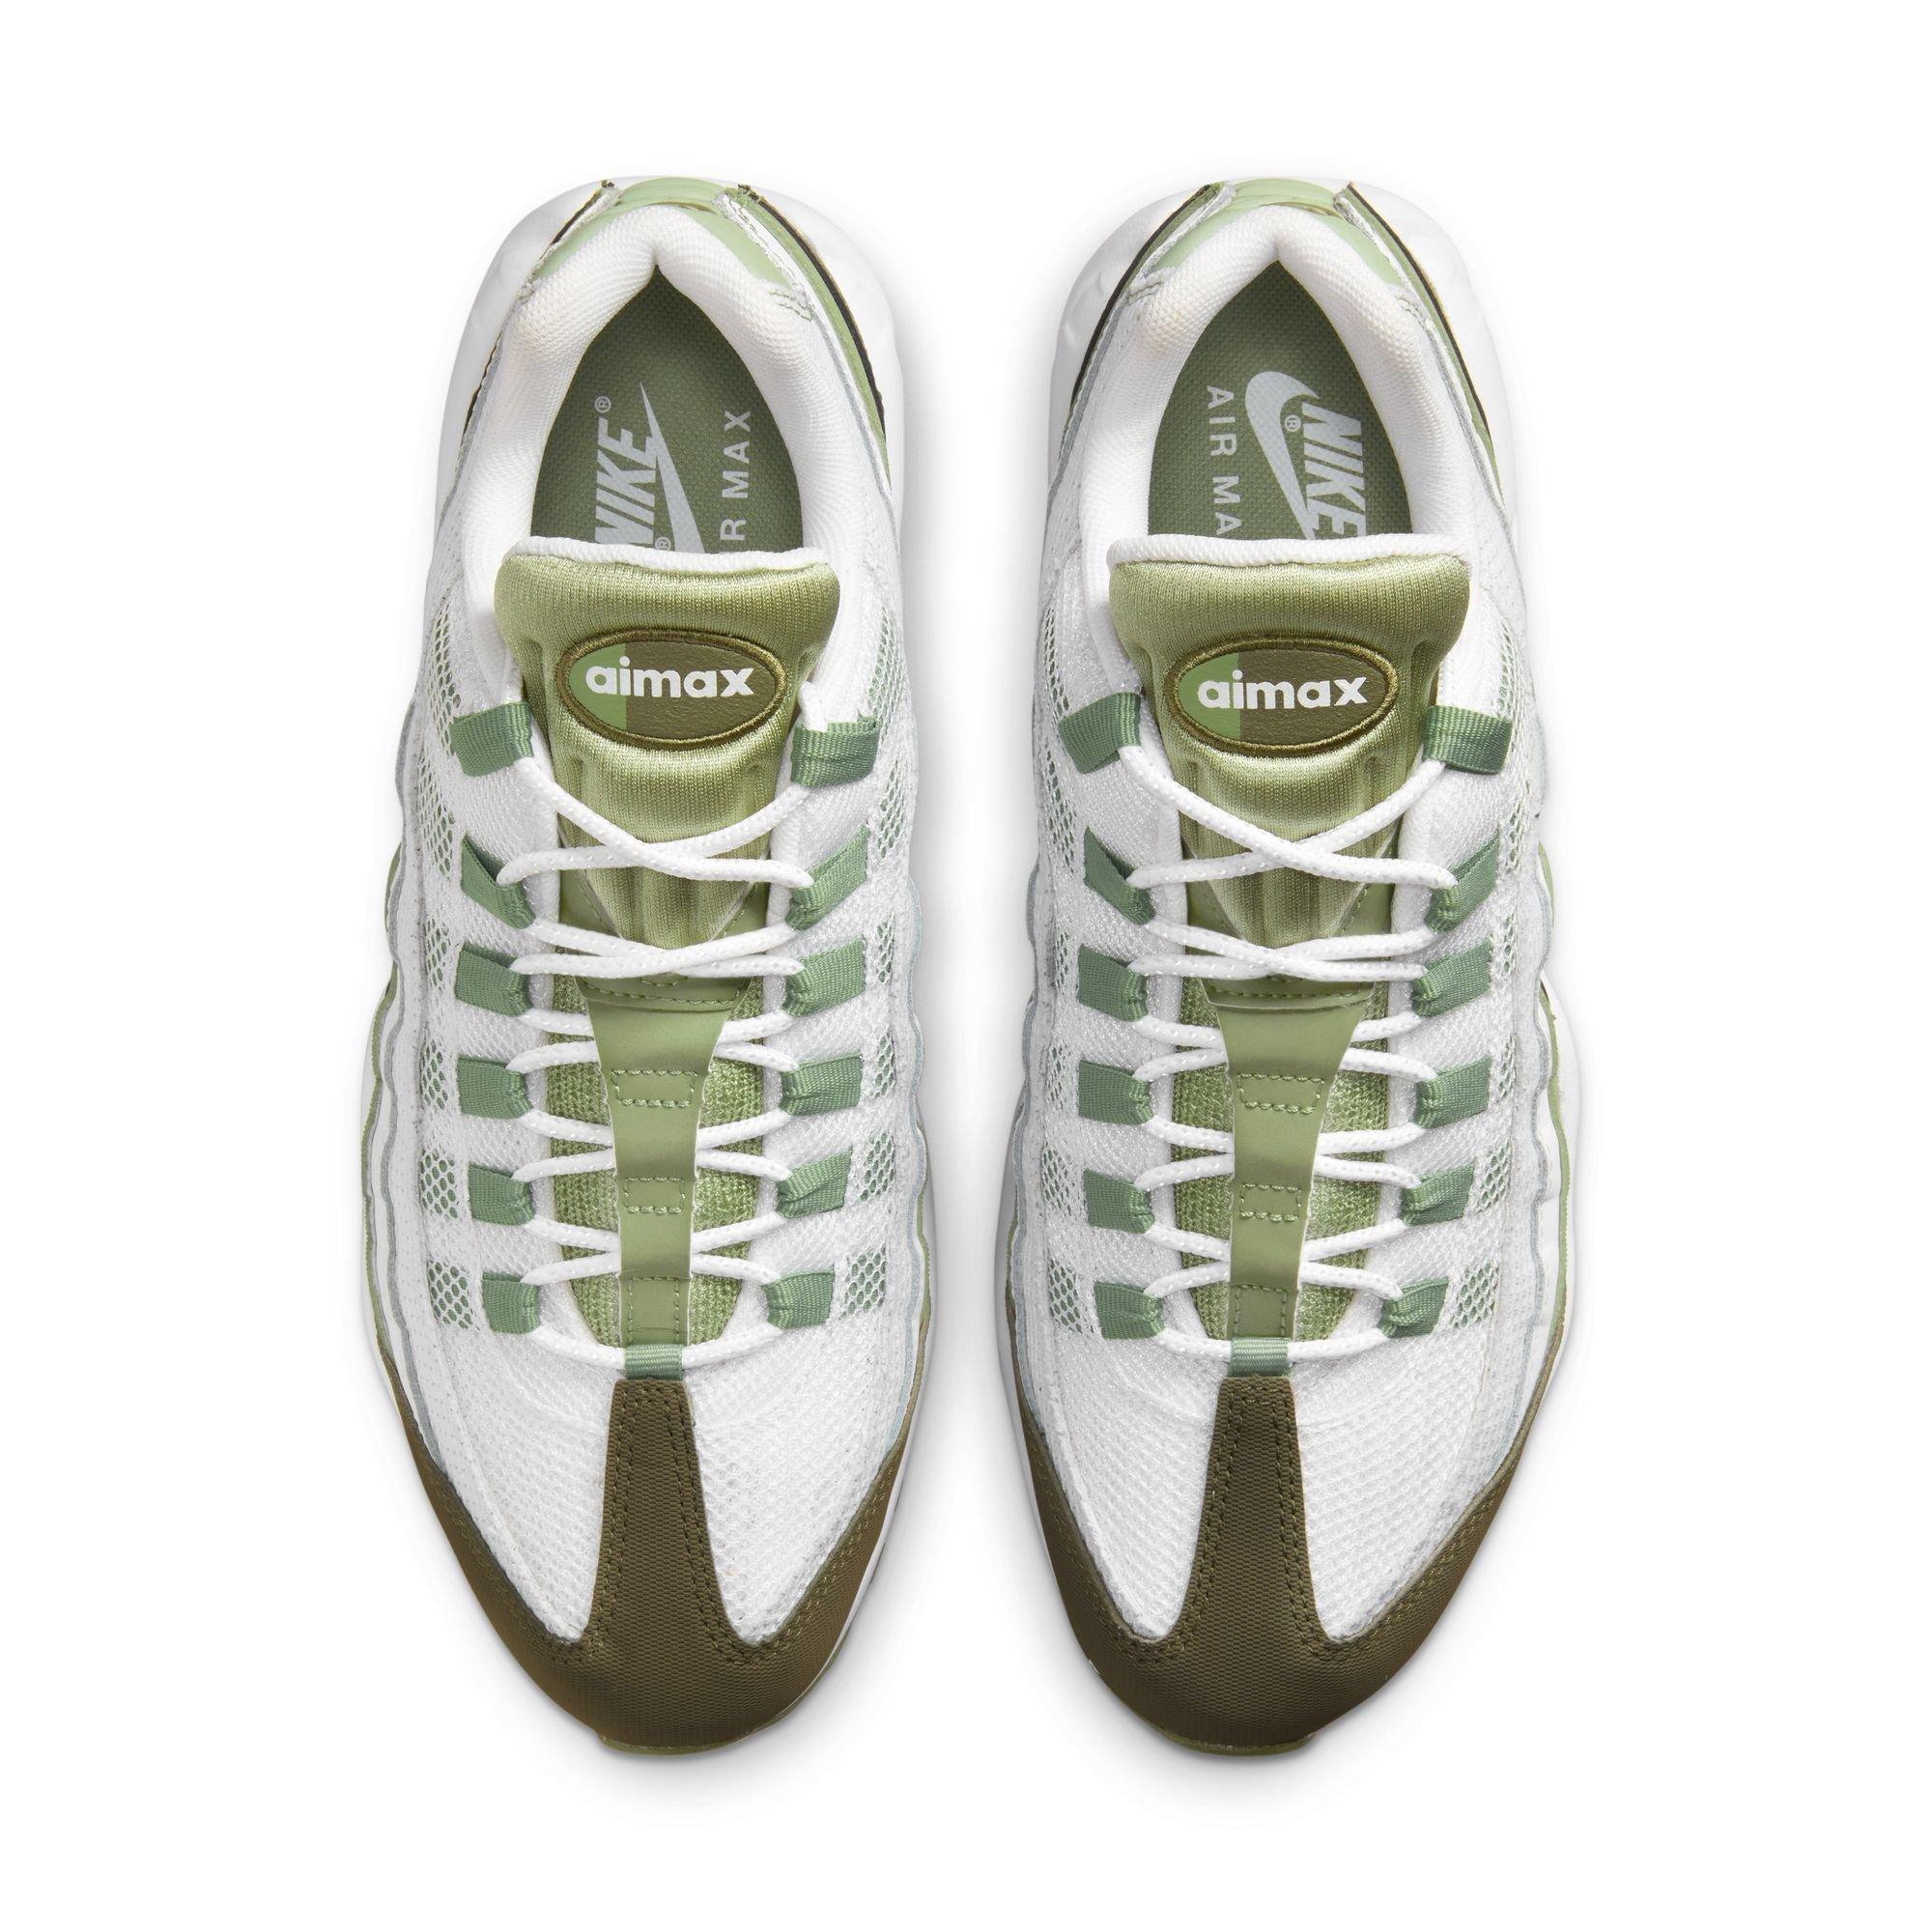 Nike Air "White/Oil Green/Medium Men's Shoe